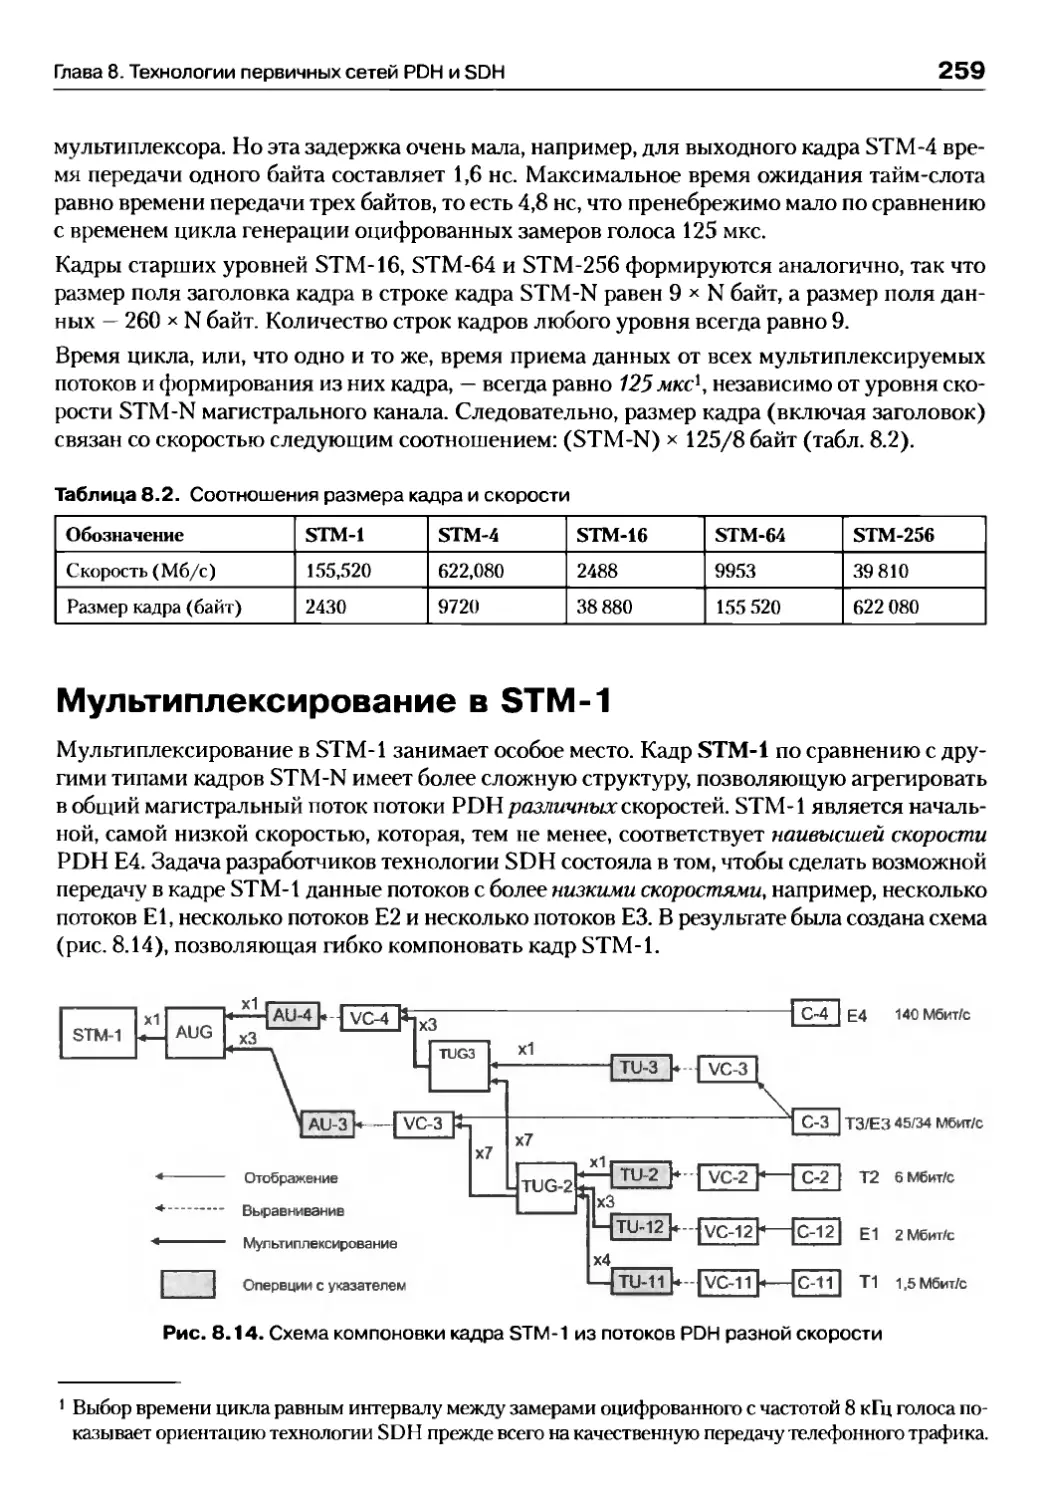 Мультиплексирование в STM-1